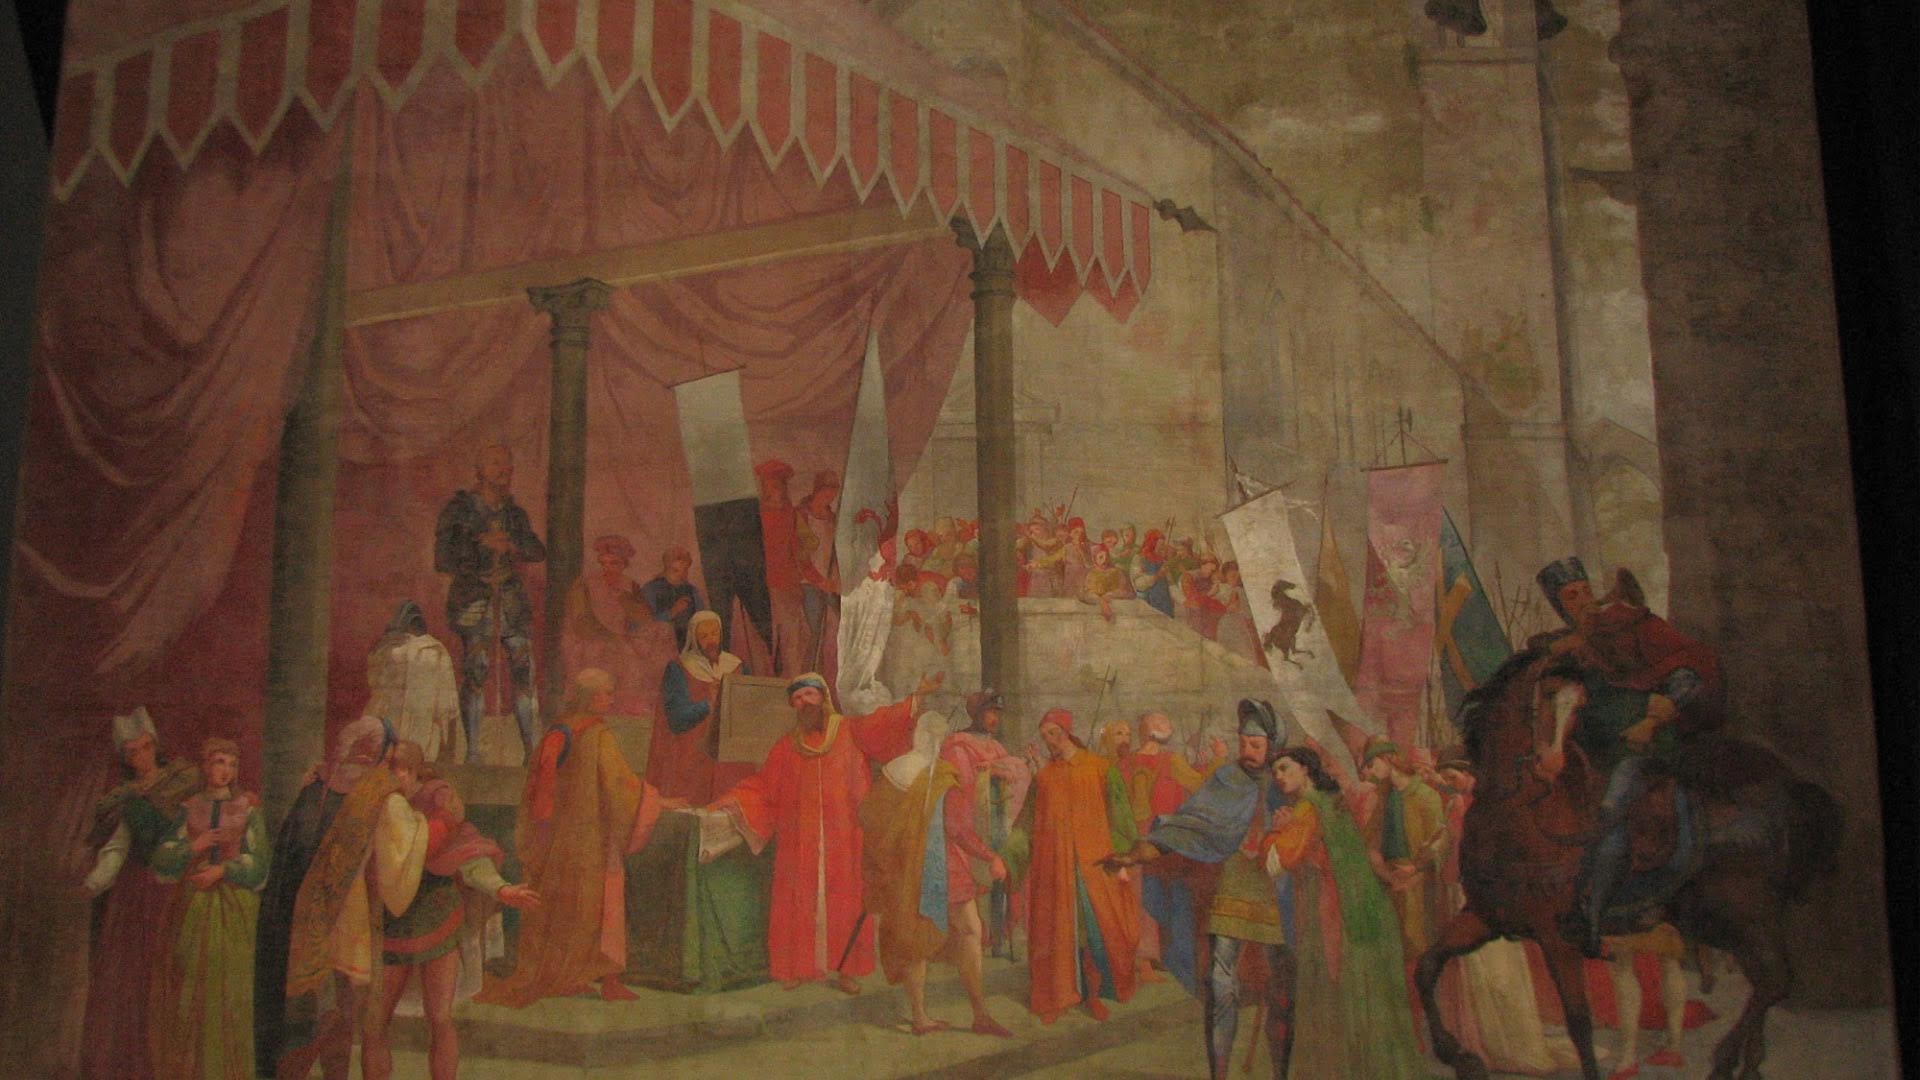 The curtain of the Teatro del Popolo in Castelfiorentino